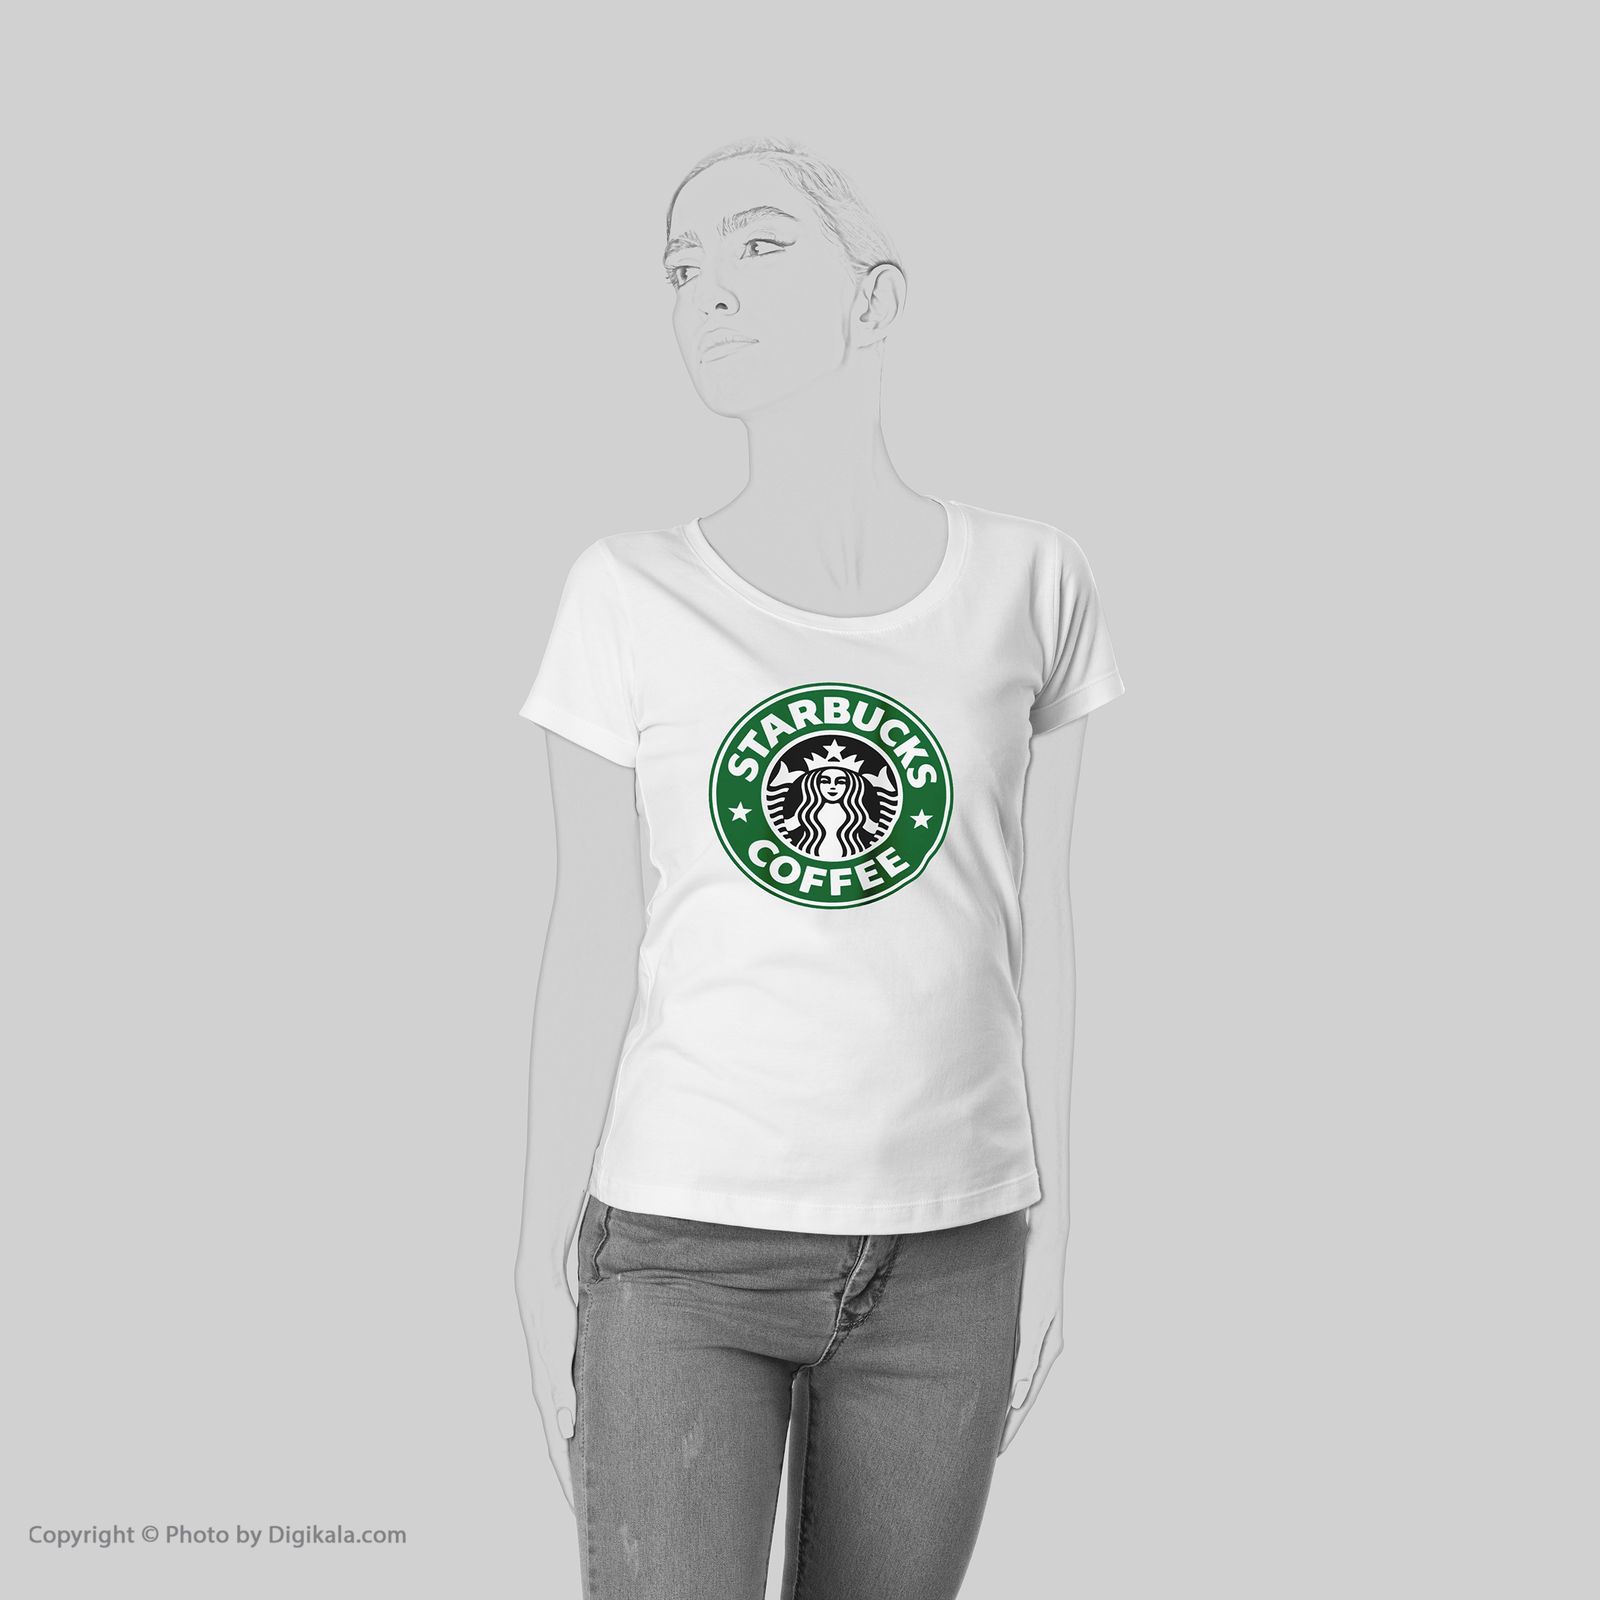 تی شرت به رسم طرح استارباکس کد 563 -  - 6